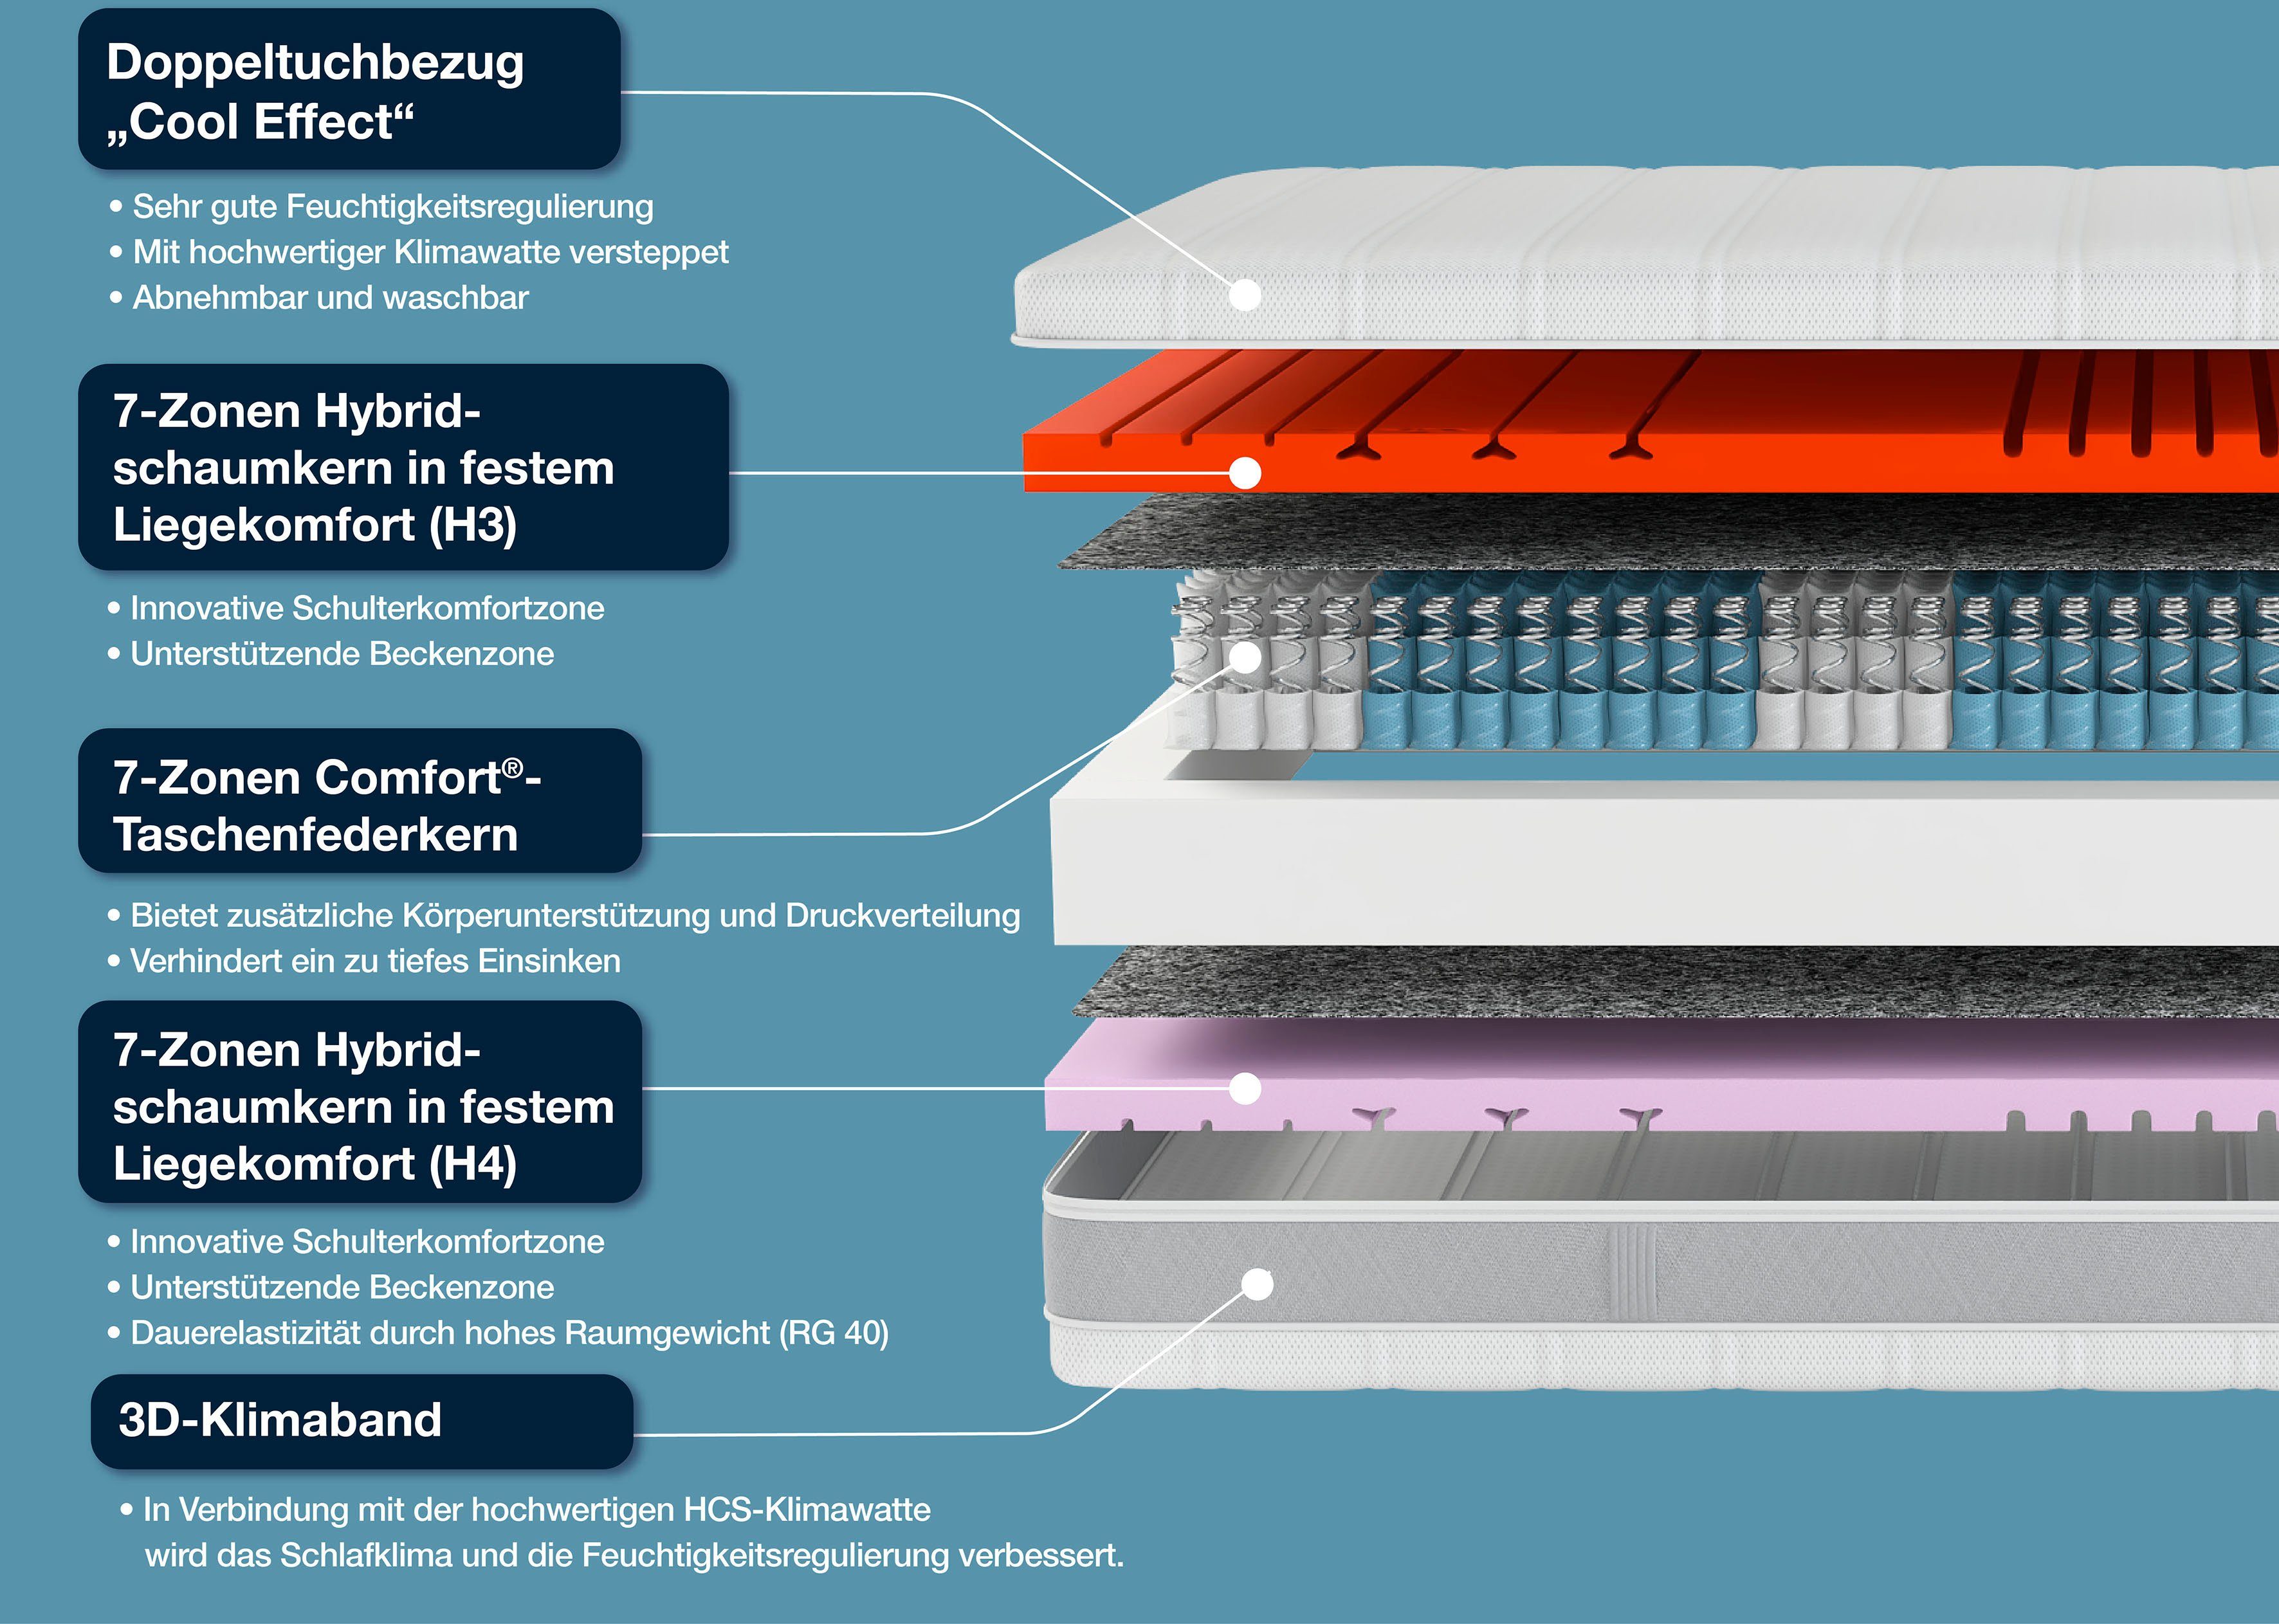 Taschenfederkernmatratze Sleep Balance TFK, 90x200 Größen in erhältlich cm den (1-tlg), hoch, 24 Schlafsysteme, vielen Größen und Hn8 weiteren